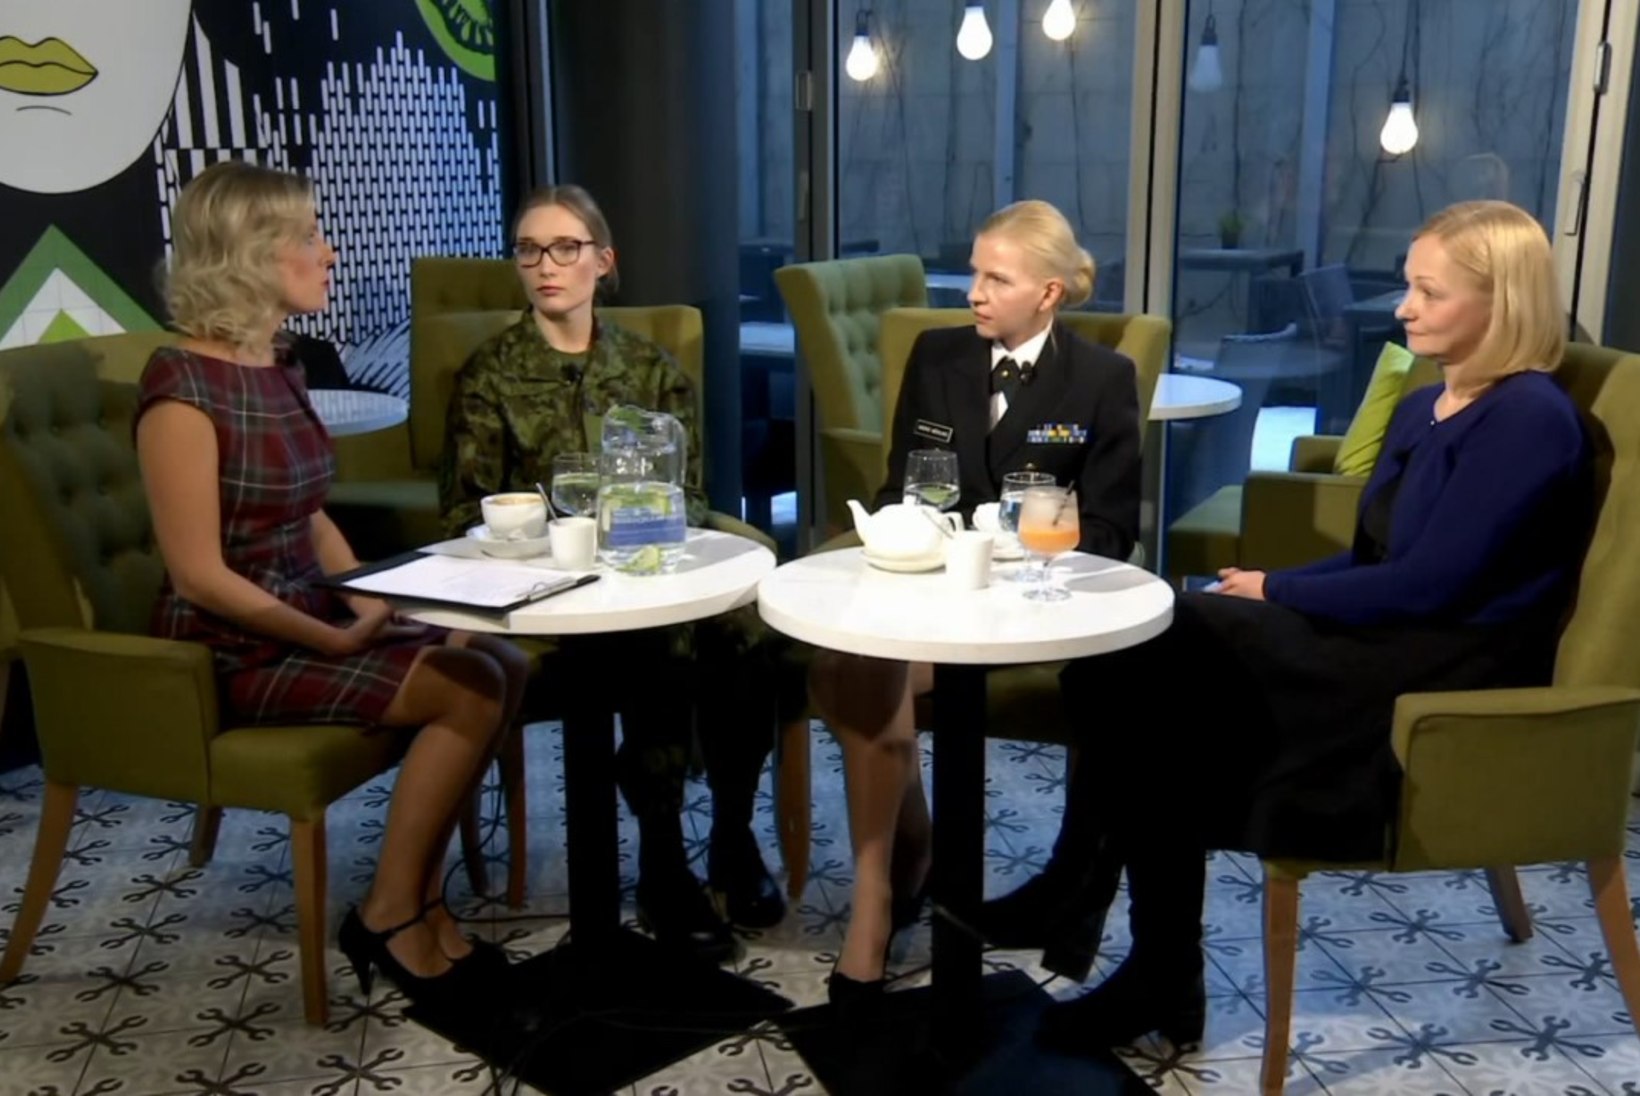 "Naised, kes ei nuta": millal saab Eesti kaitsevägi esimese naiskindrali?